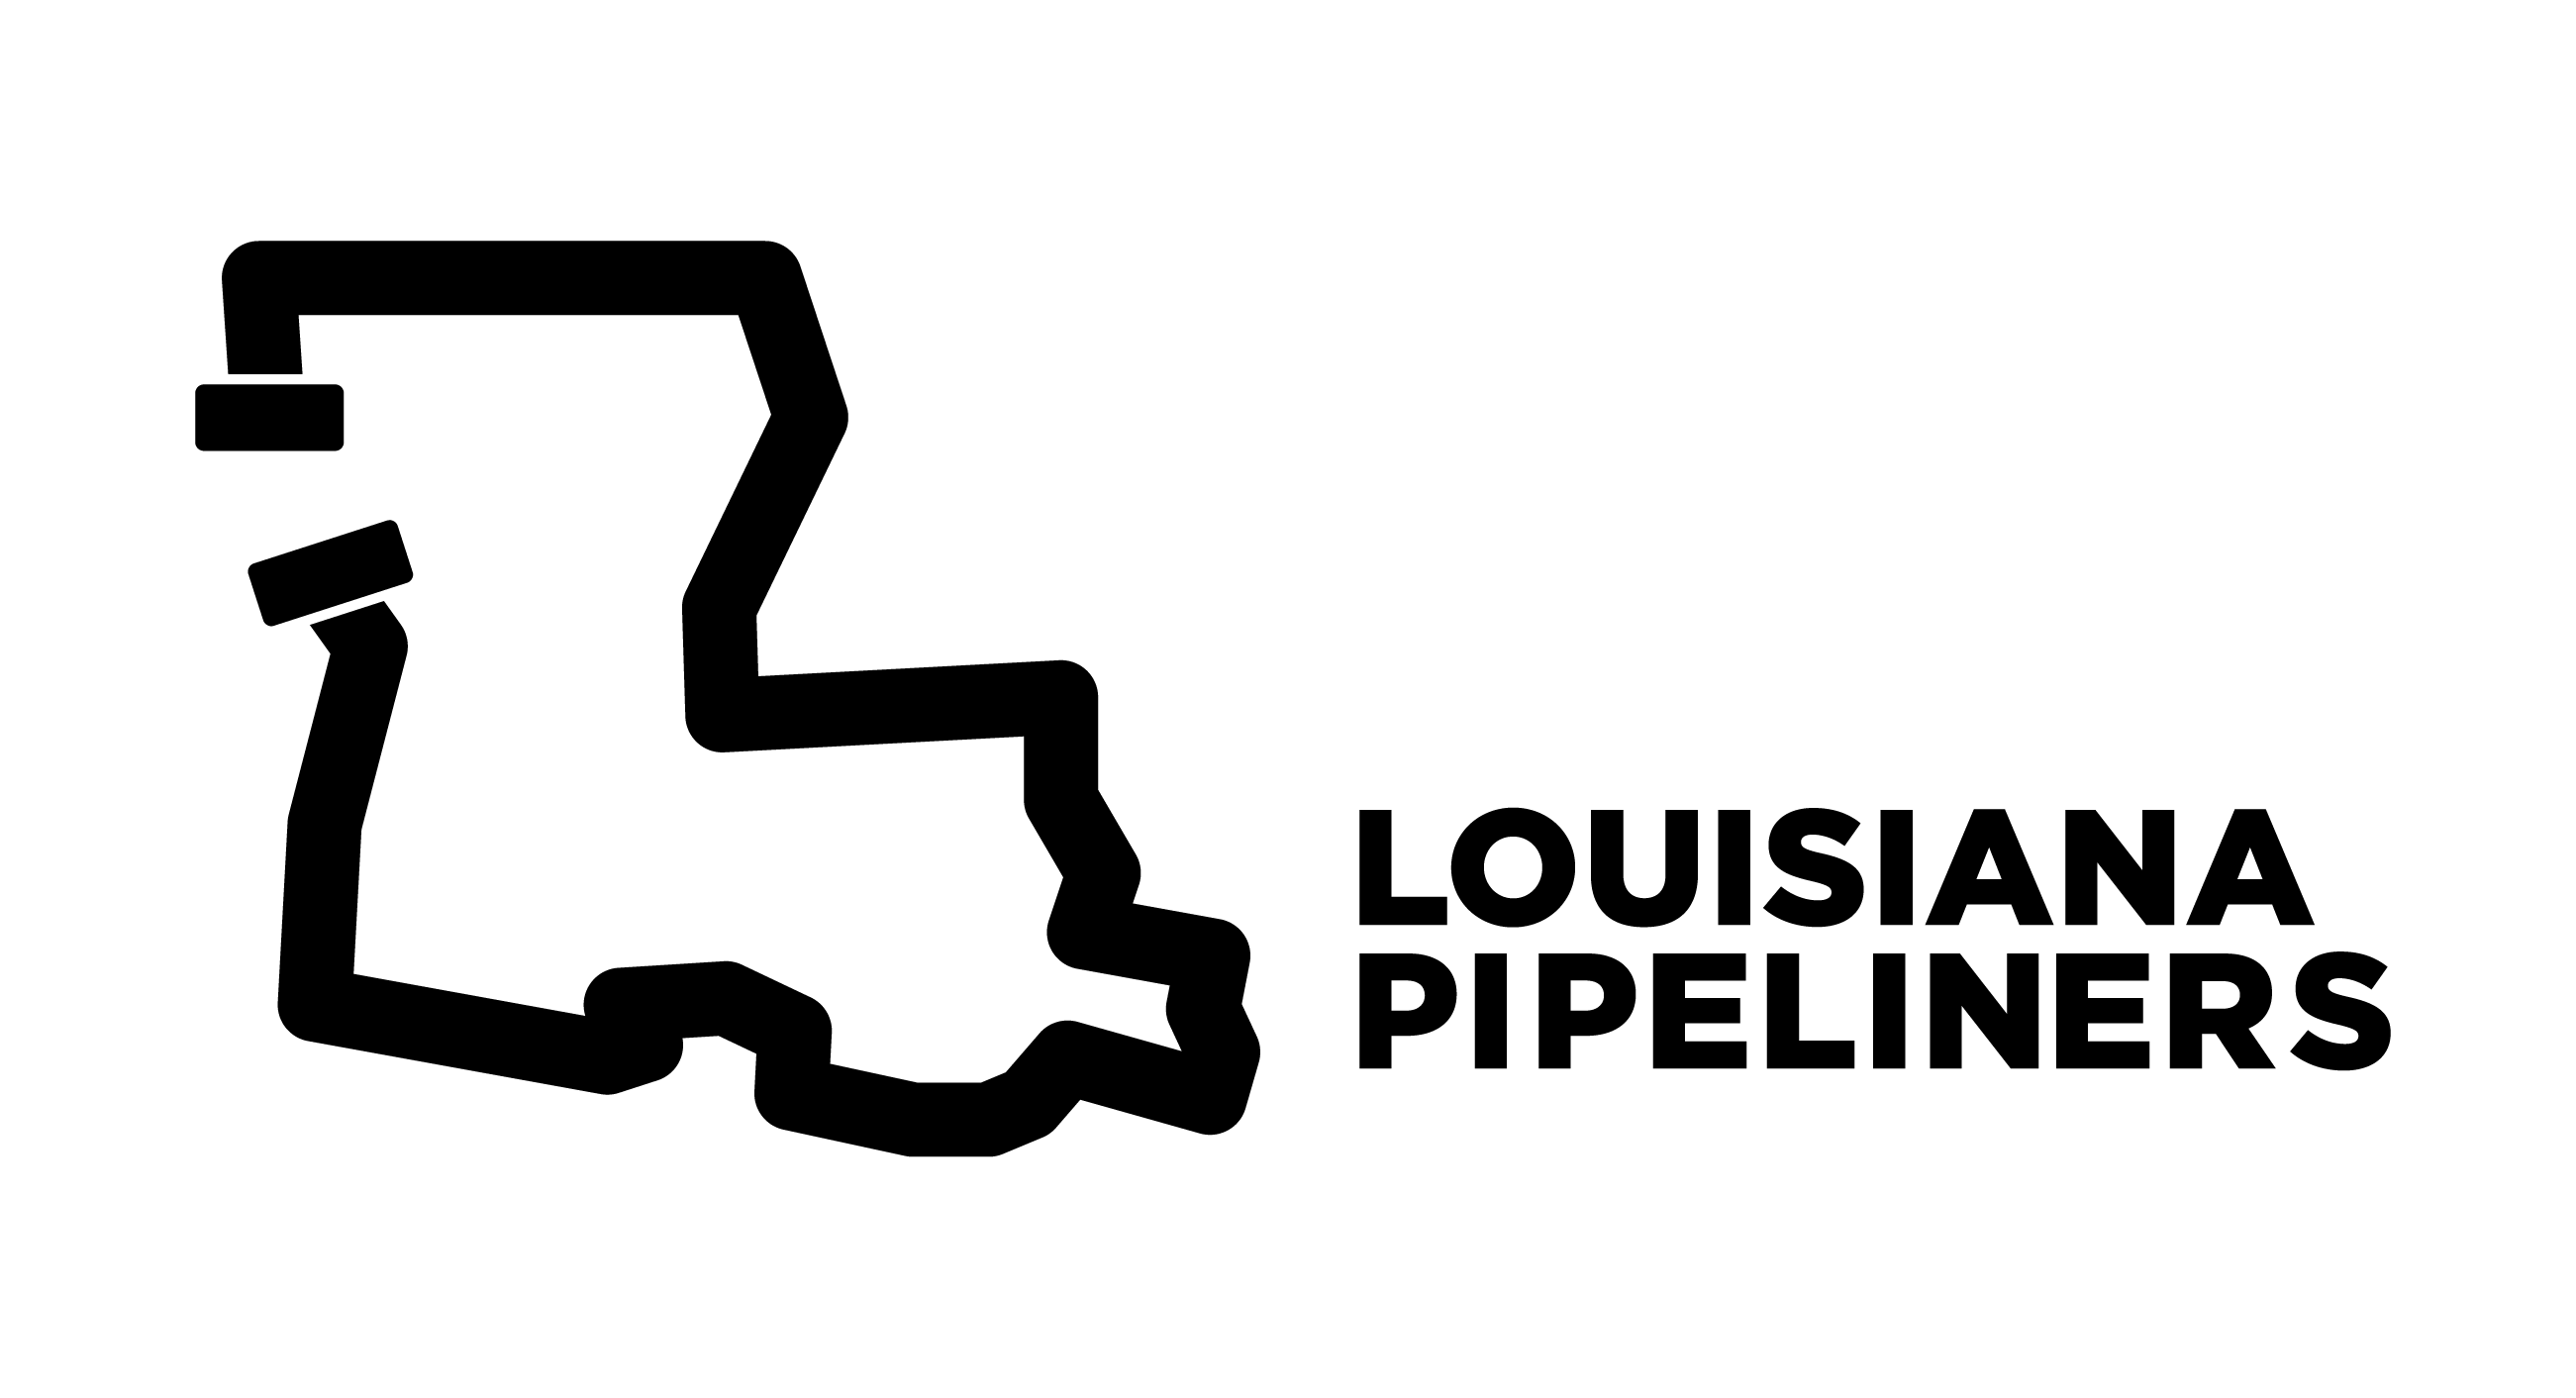 Louisiana clipart simple, Louisiana simple Transparent FREE for